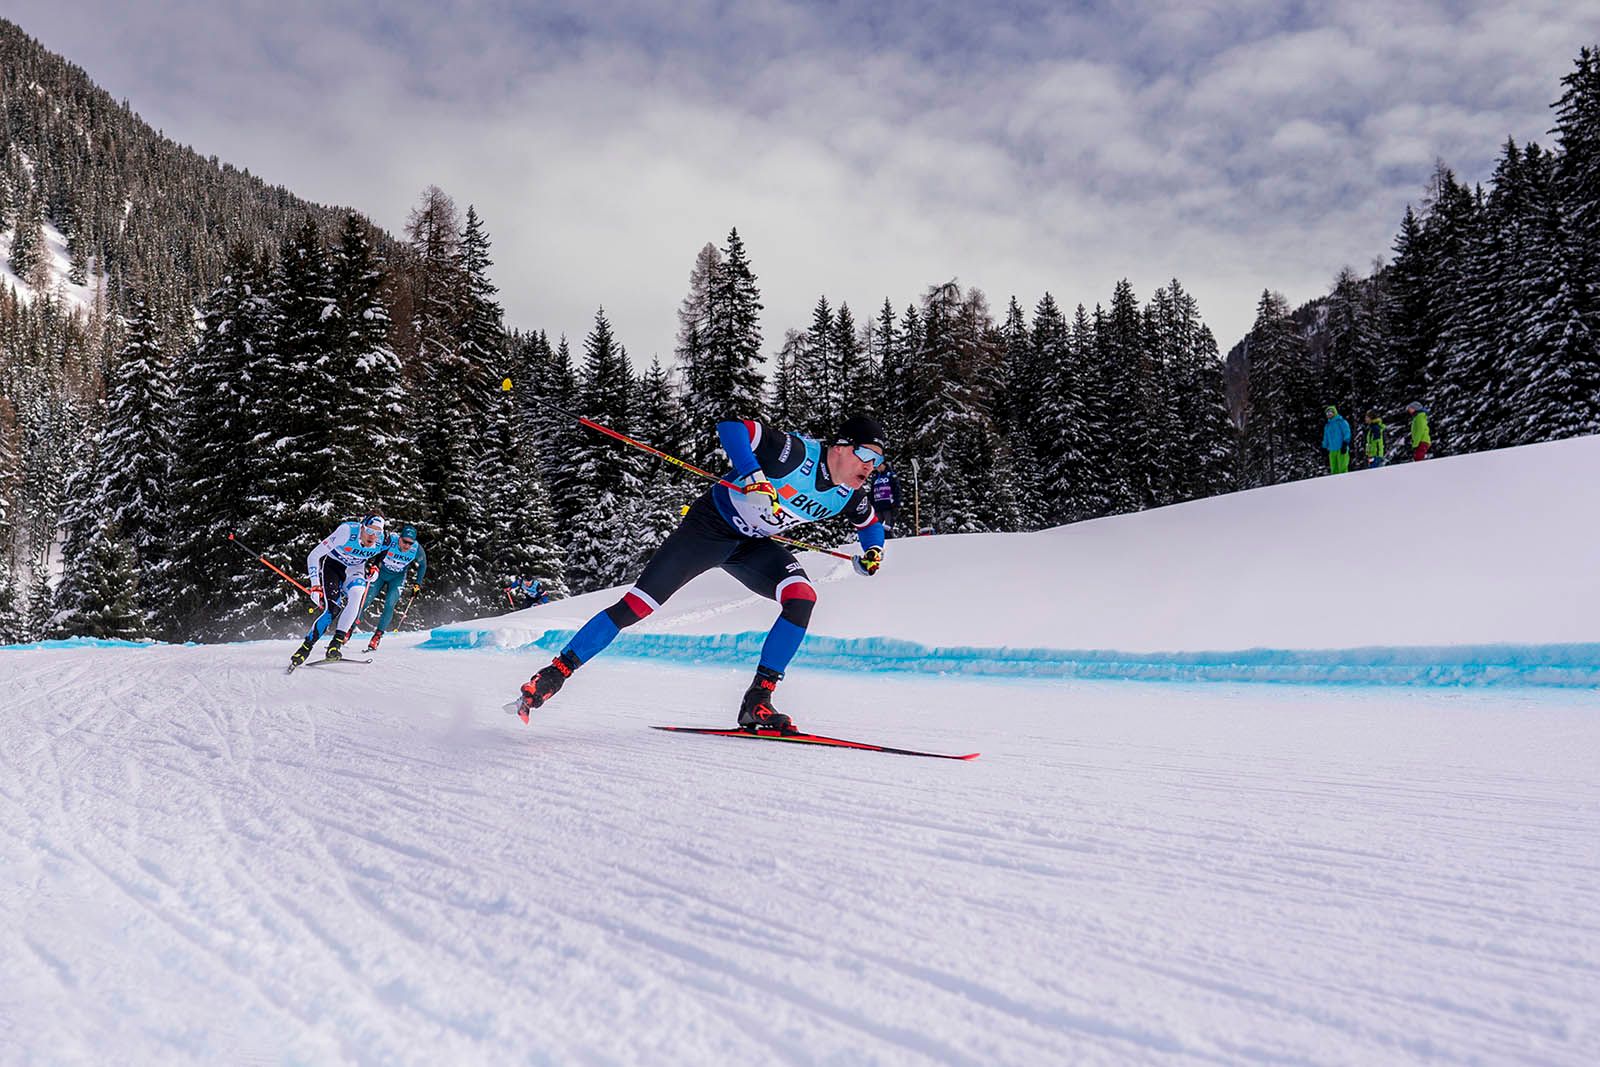 Klaebo gewinnt freie Fünfzehn in Oberstdorf, Felner holt erstmals Weltcup